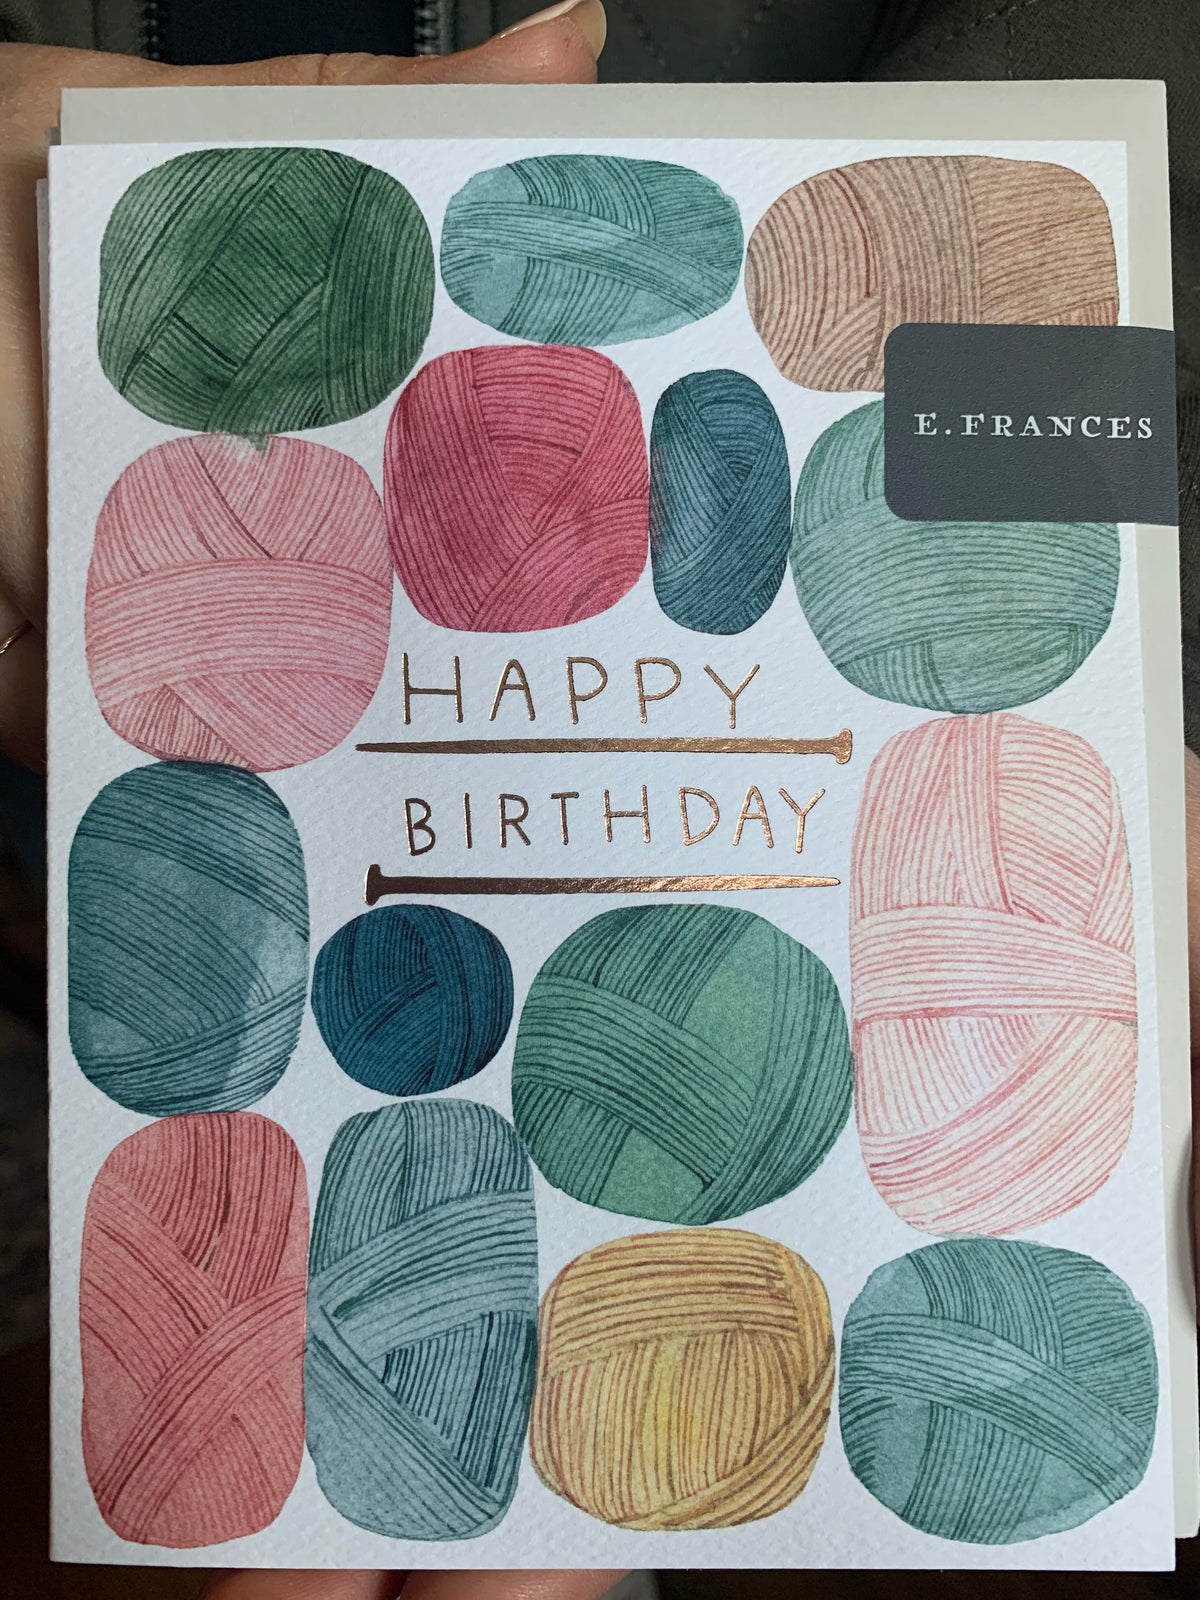 Happy Birthday Card with Yarn